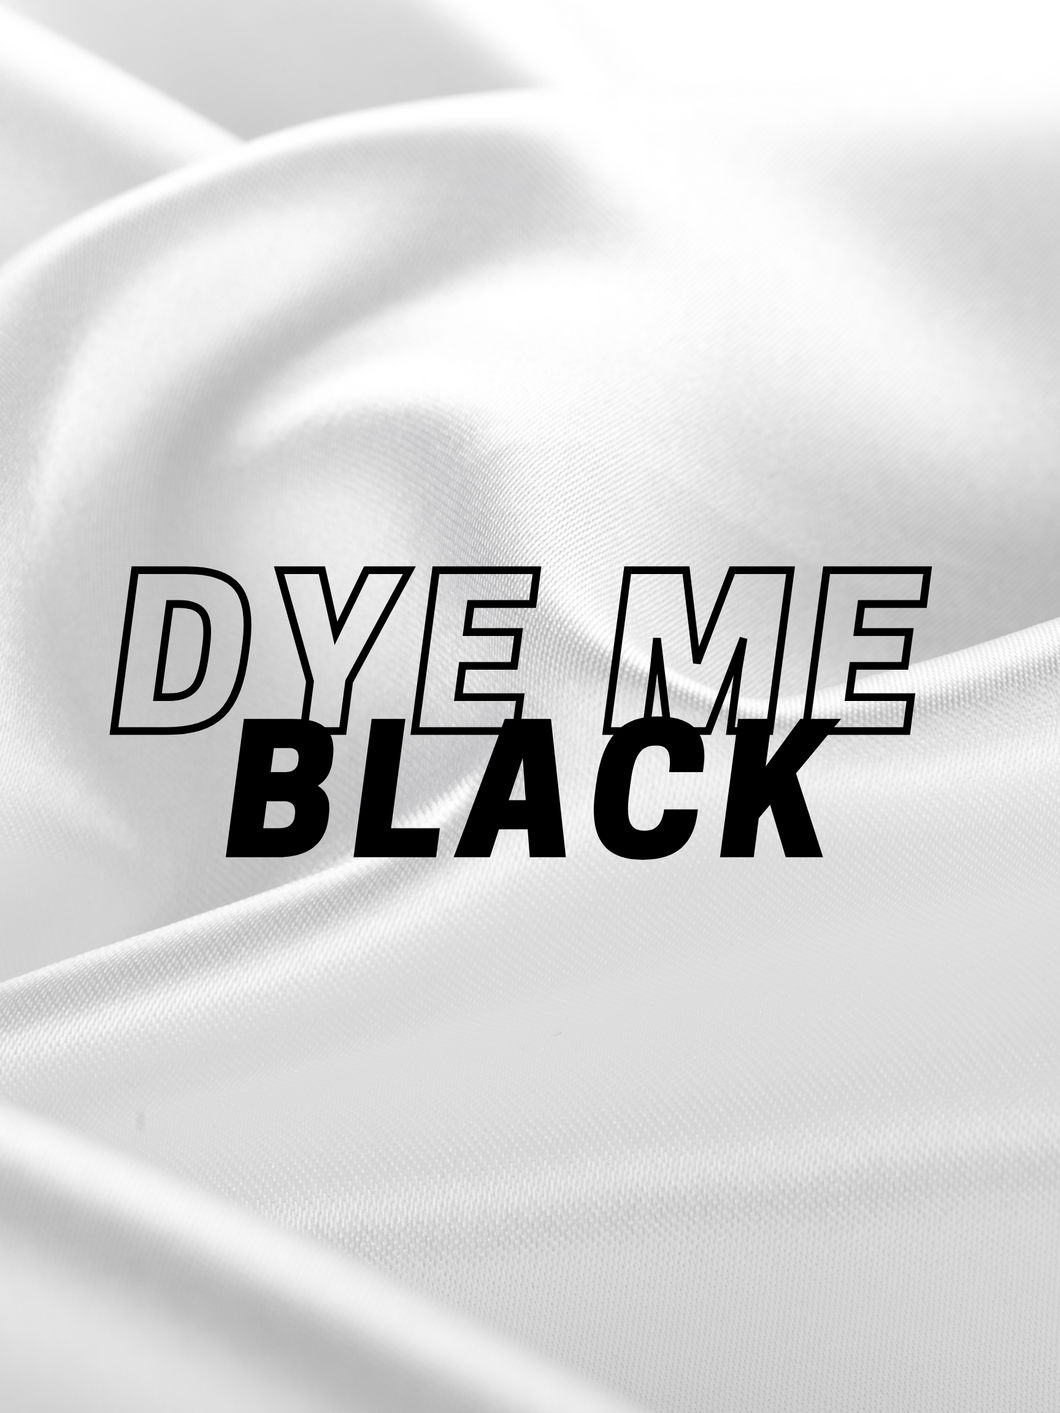 Dye My Bundles Black!